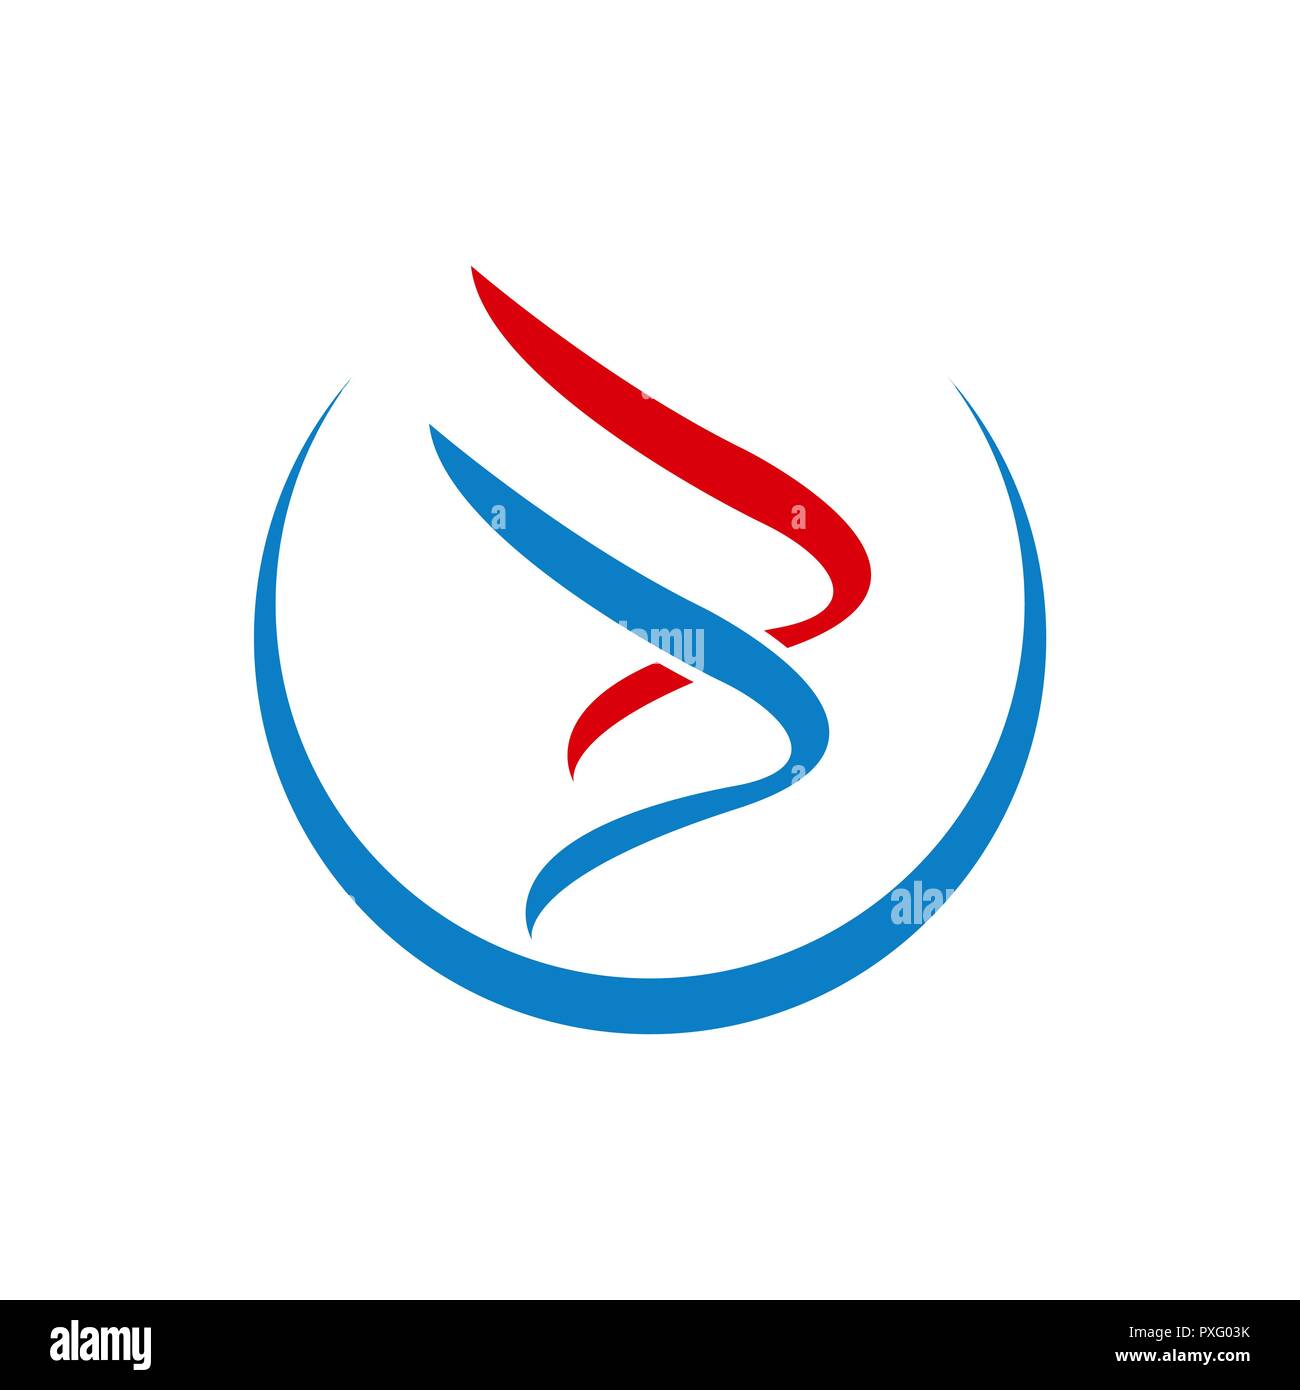 Swoosh logo aile de luxe avec modèle couleur rouge bleu Image Vectorielle  Stock - Alamy